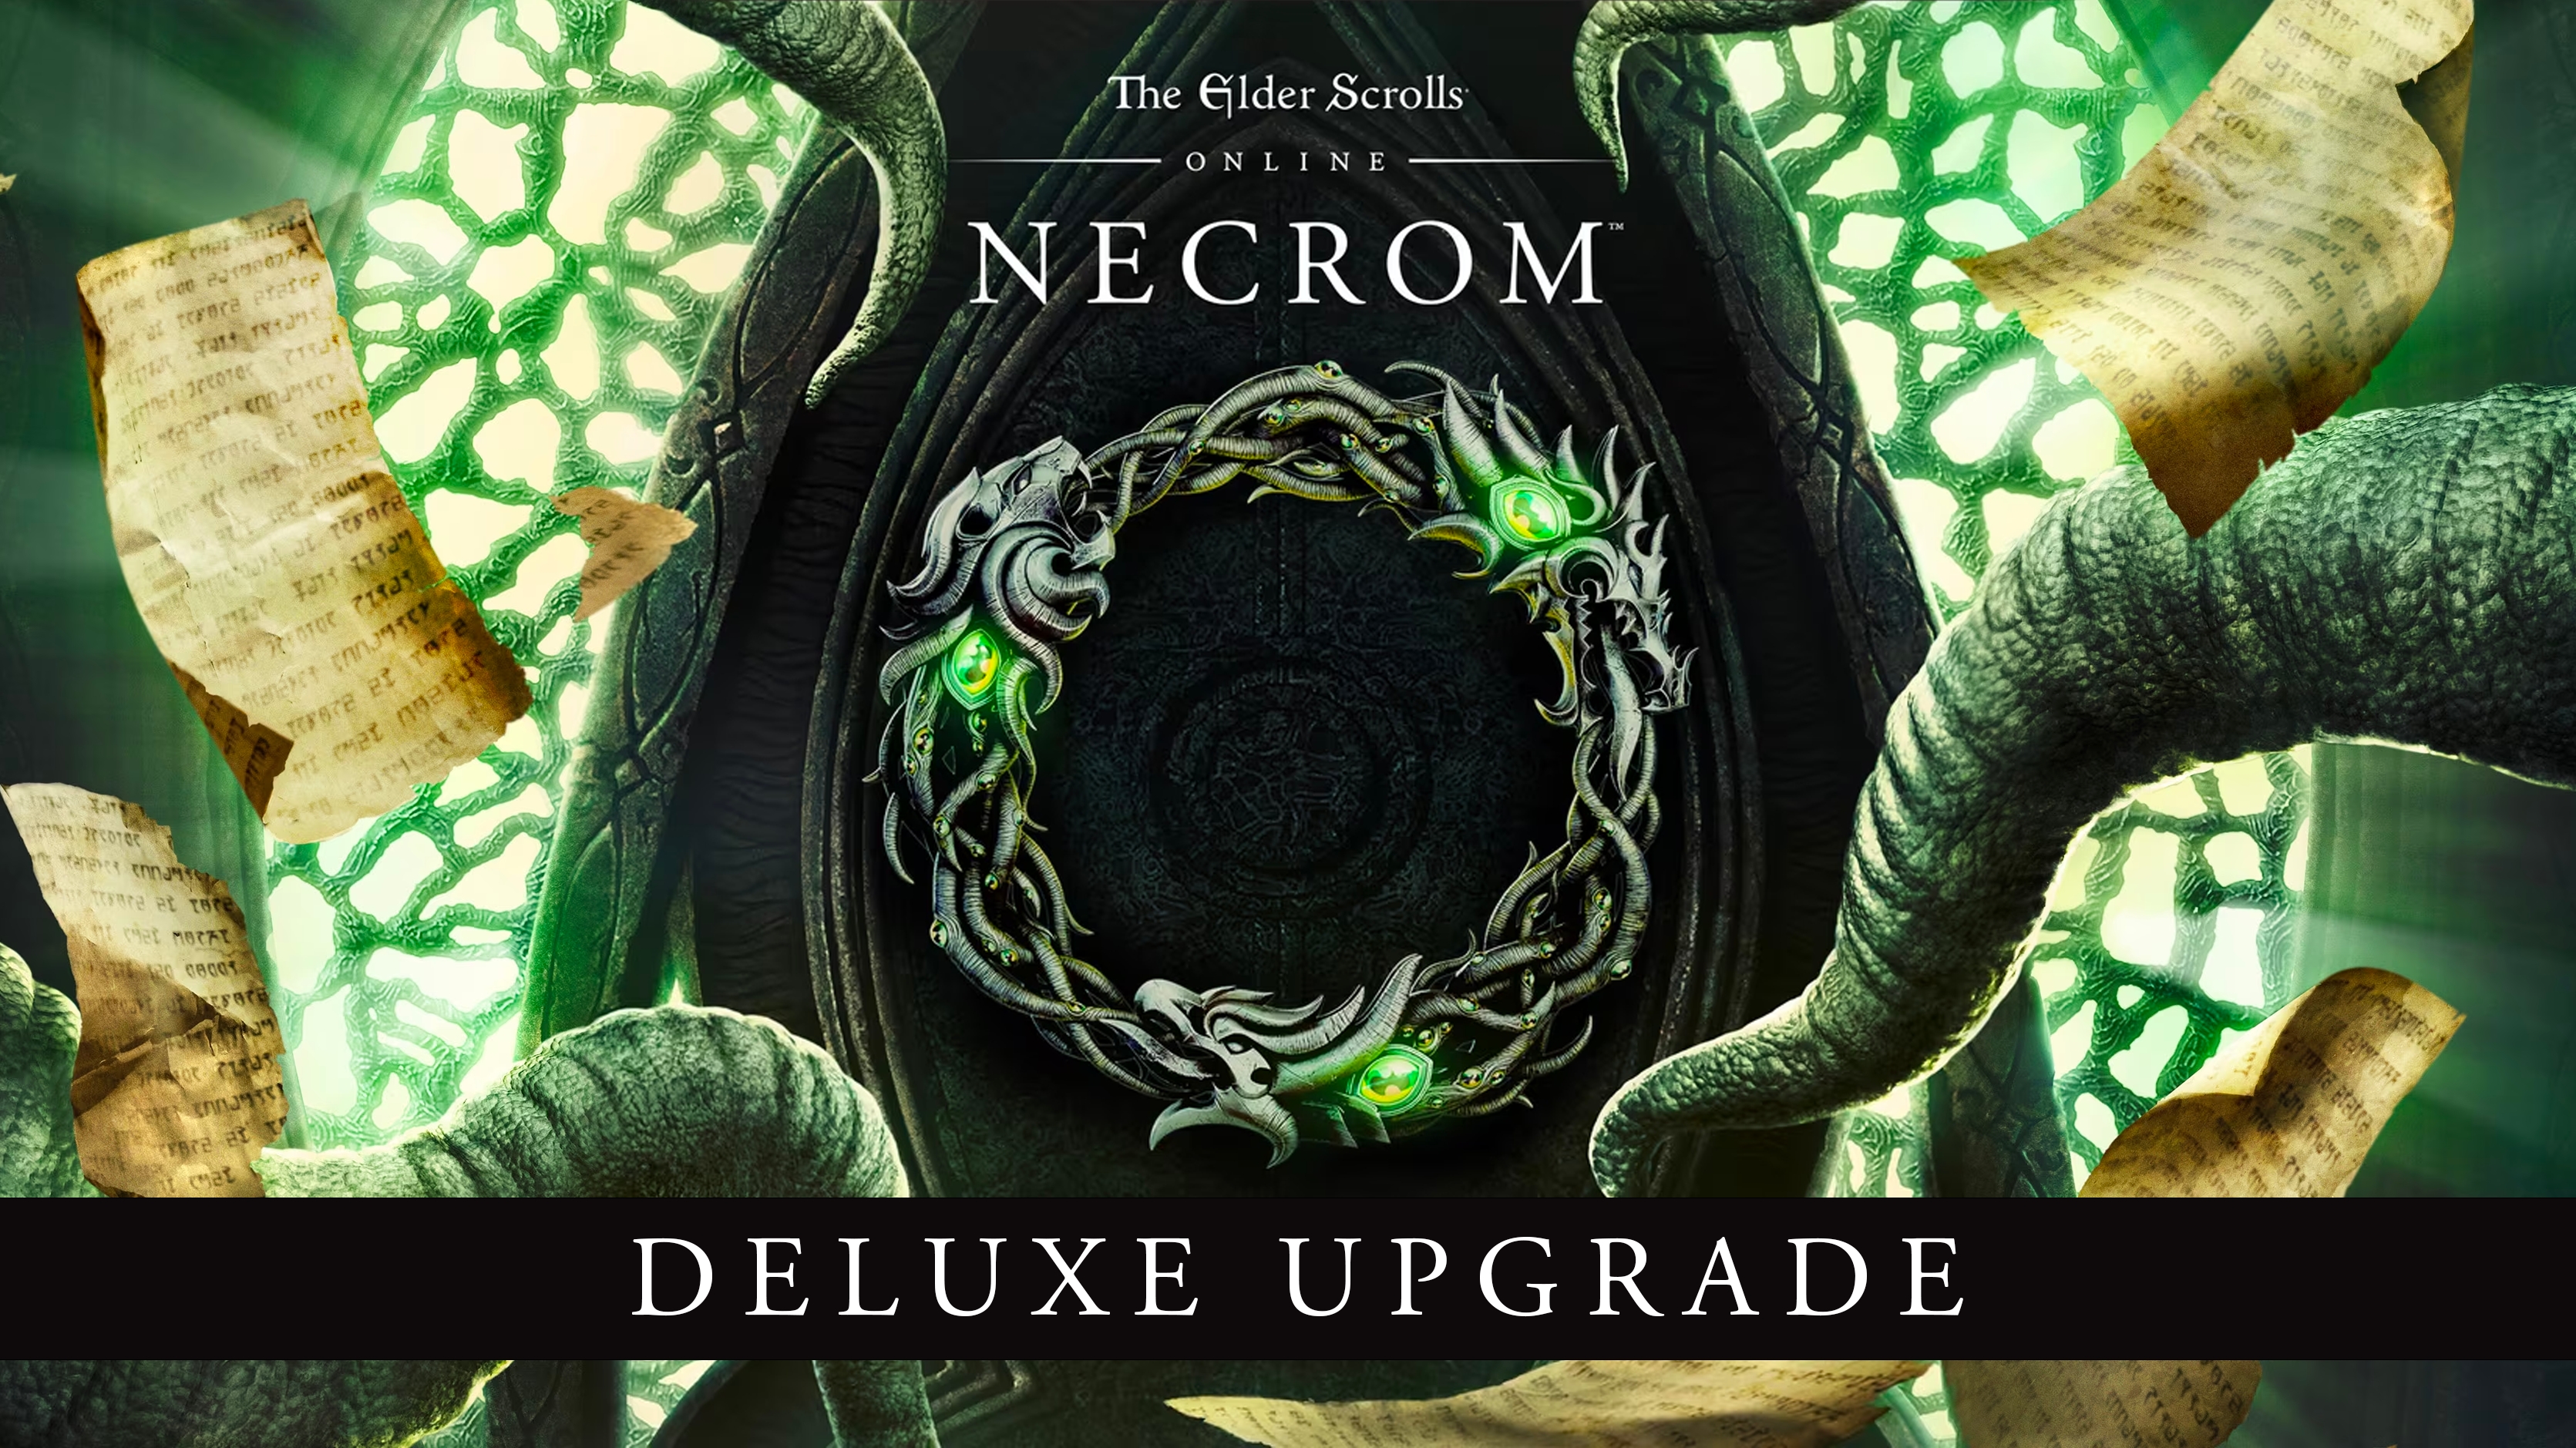 Buy The Elder Scrolls Online Deluxe Upgrade: Necrom Other